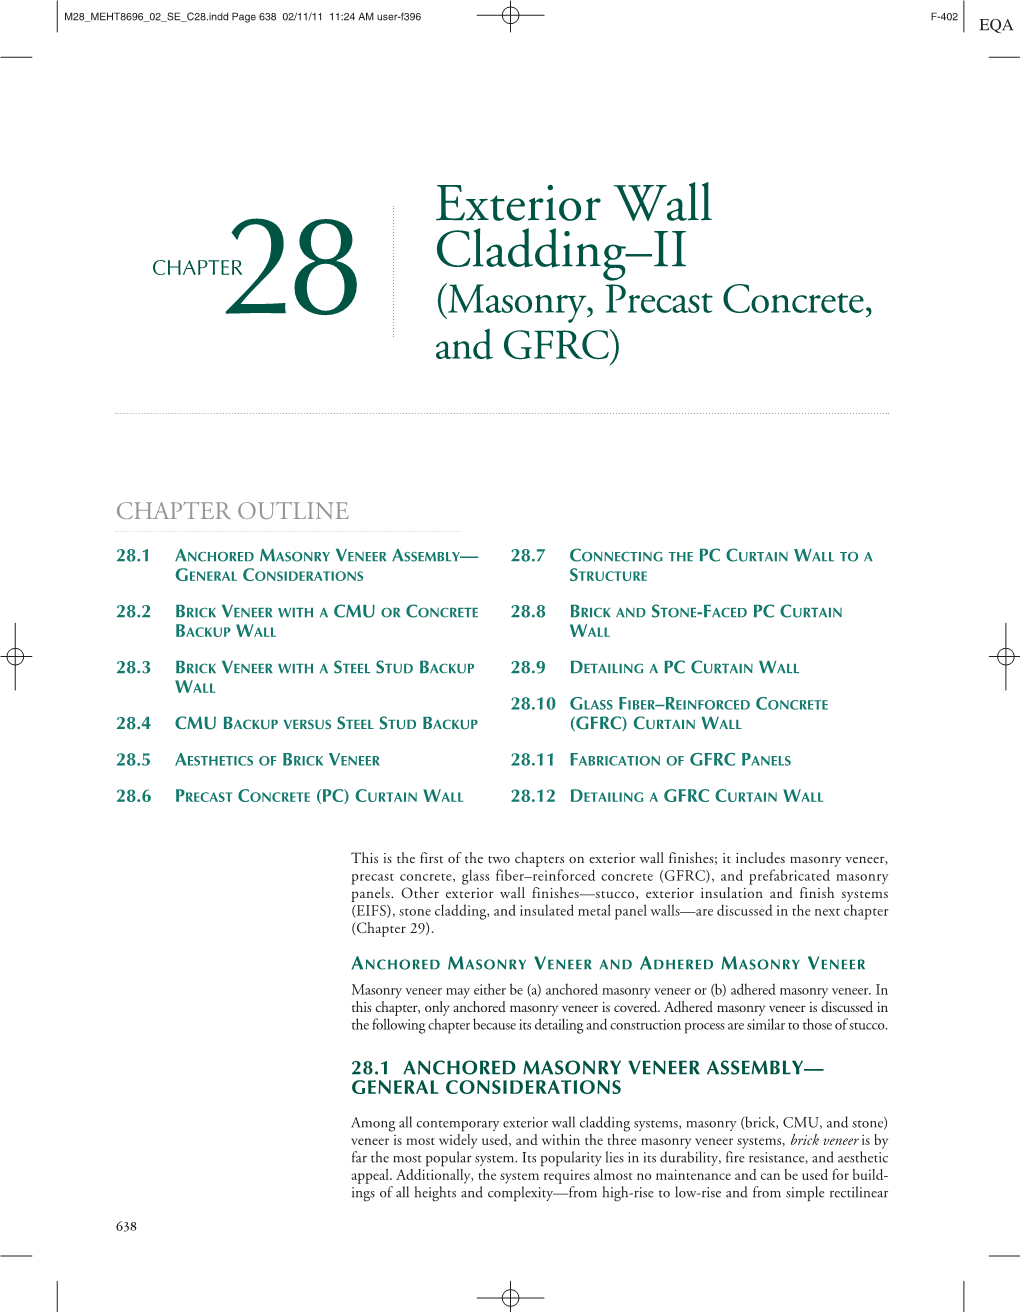 Exterior Wall Cladding–II (Masonry, Precast Concrete, and GFRC)